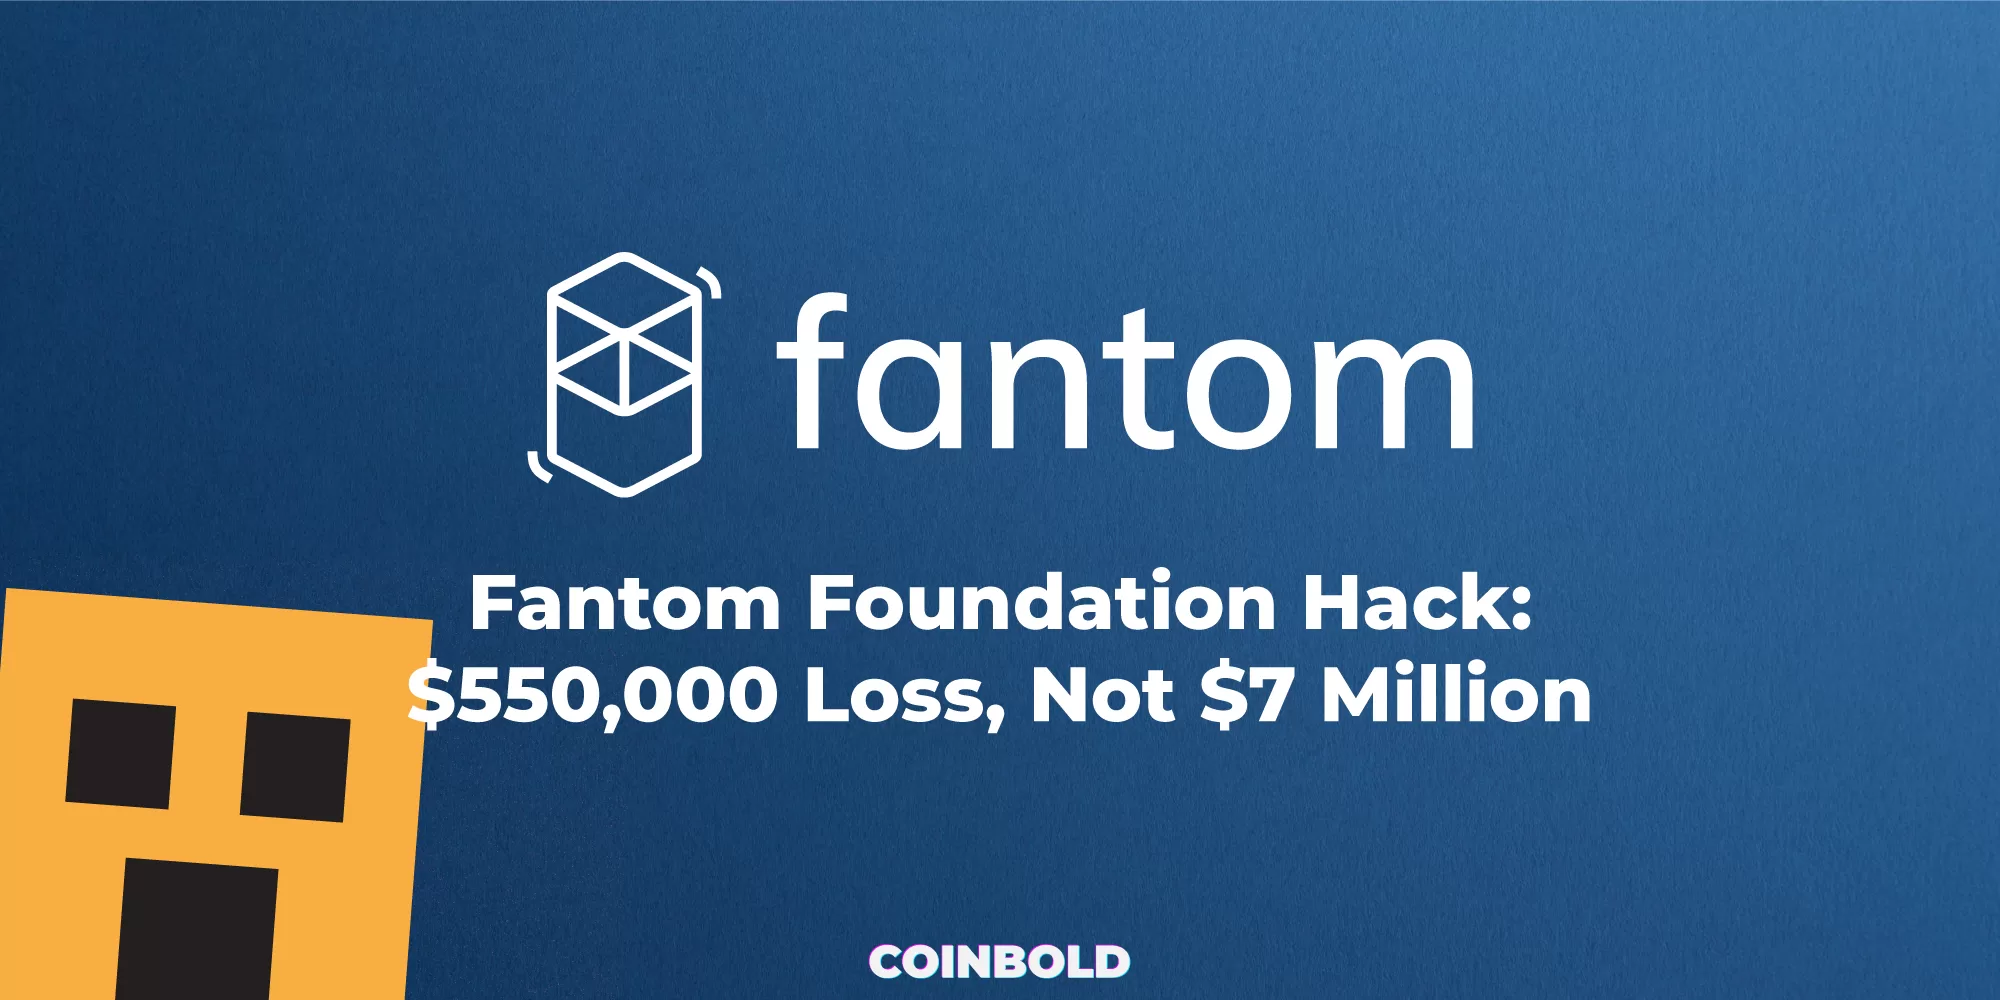 Fantom Foundation Hack $550,000 Loss, Not $7 Million